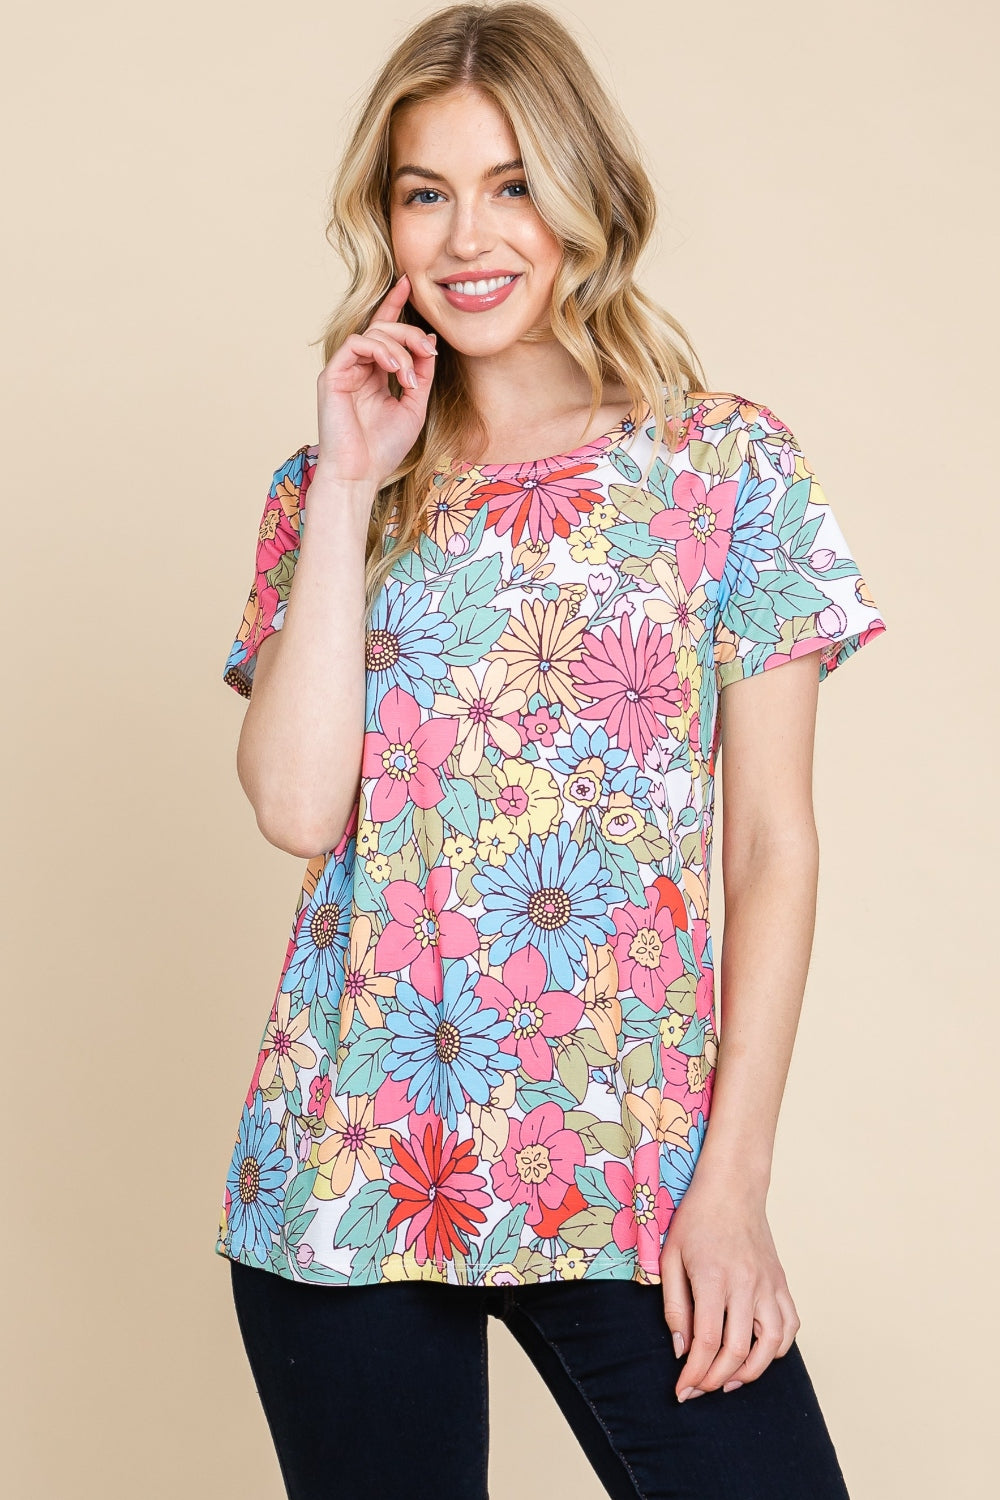 BOMBOM Multi Color Floral Short Sleeve T-Shirt Floral Trendsi